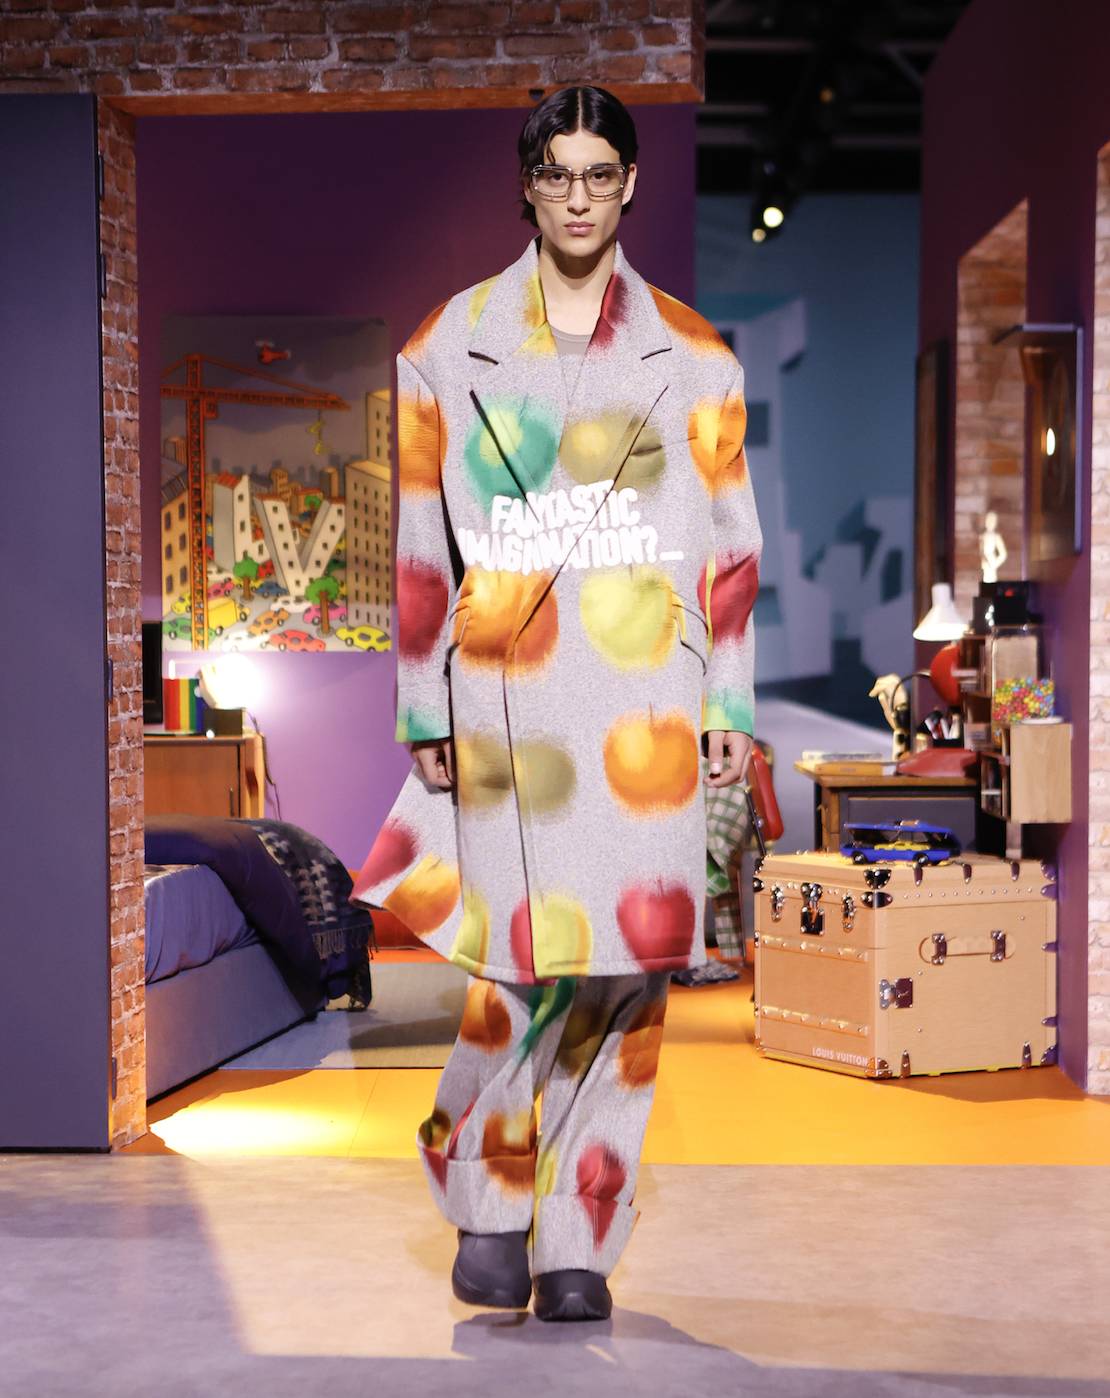 Olive Green & Louis Vuitton Kimono